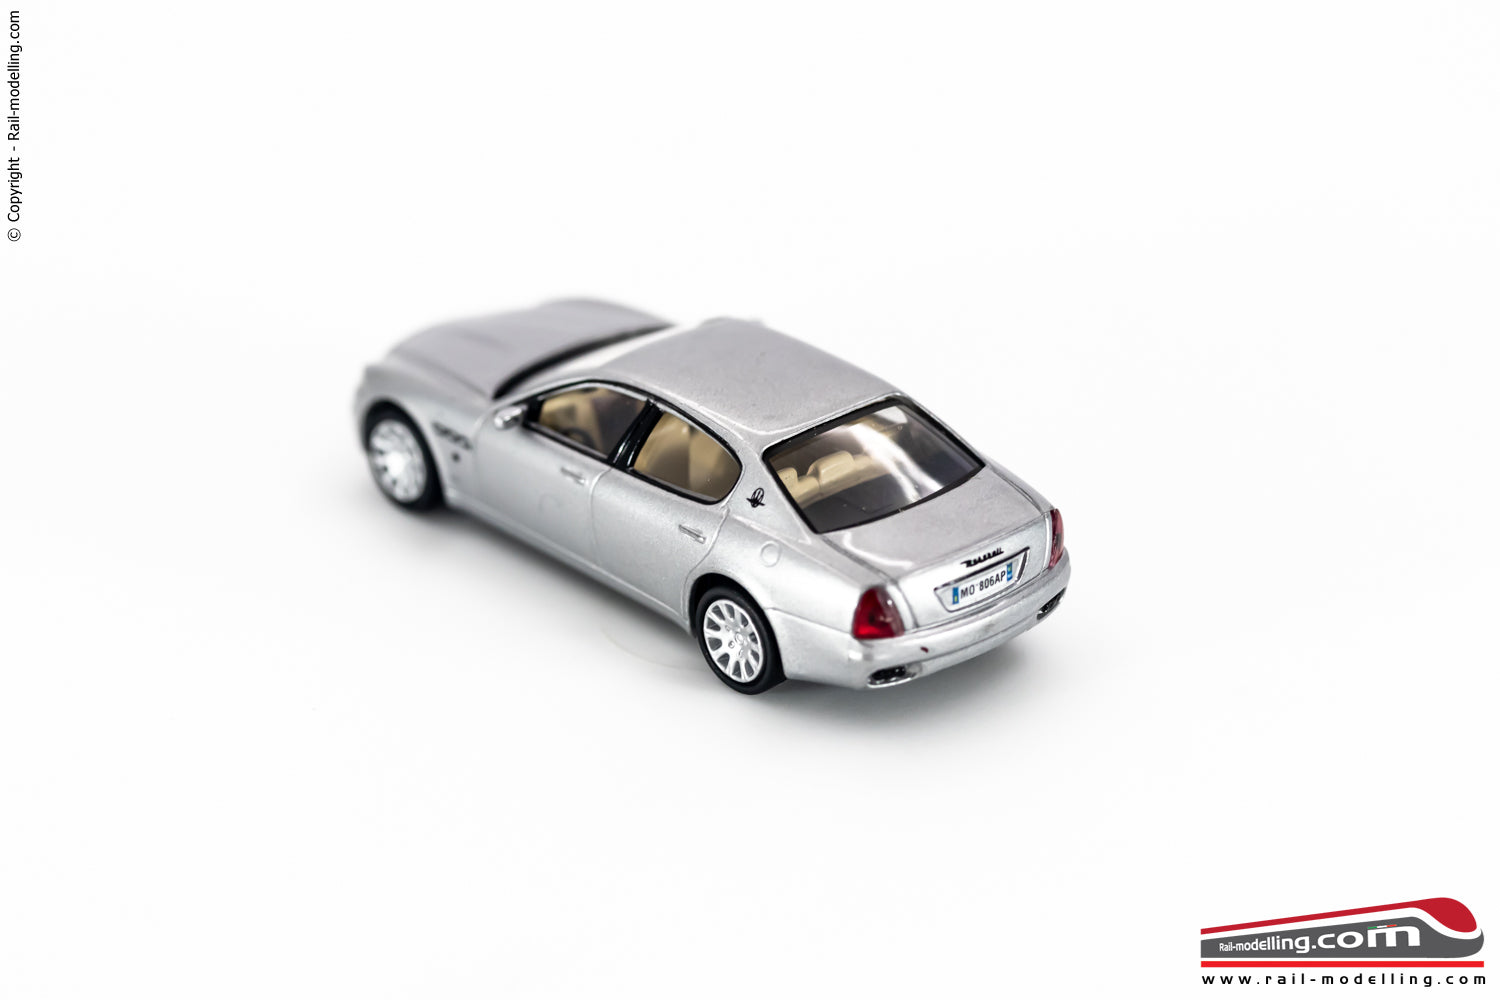 RICKO 38406 - H0 1:87 - Maserati Quattroporte argento metallizzato Auto modellino